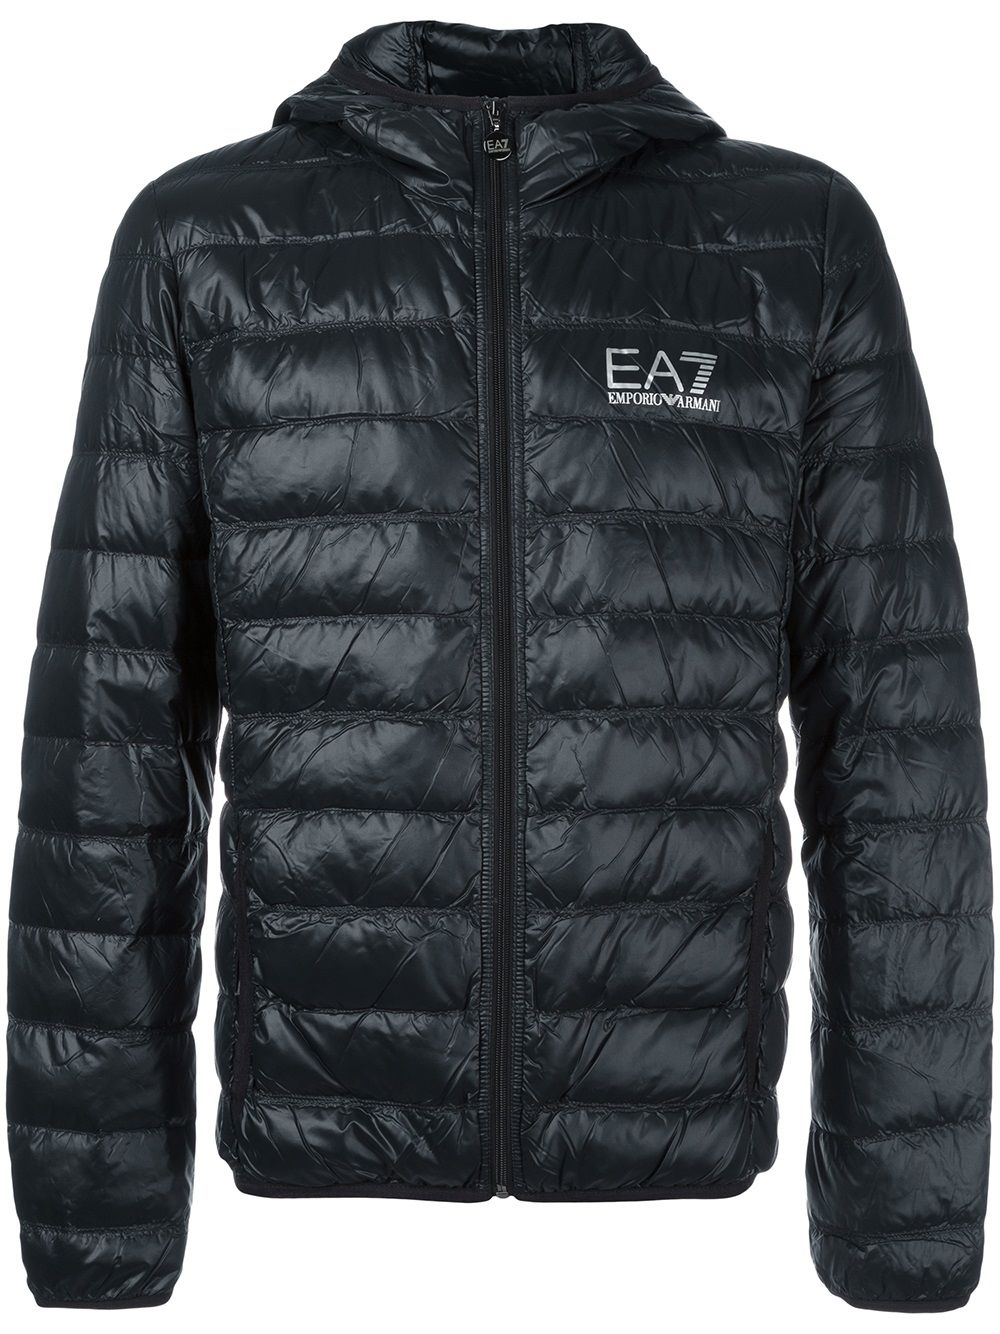 Ea7 Emporio Armani zip up jacket - Black von Ea7 Emporio Armani